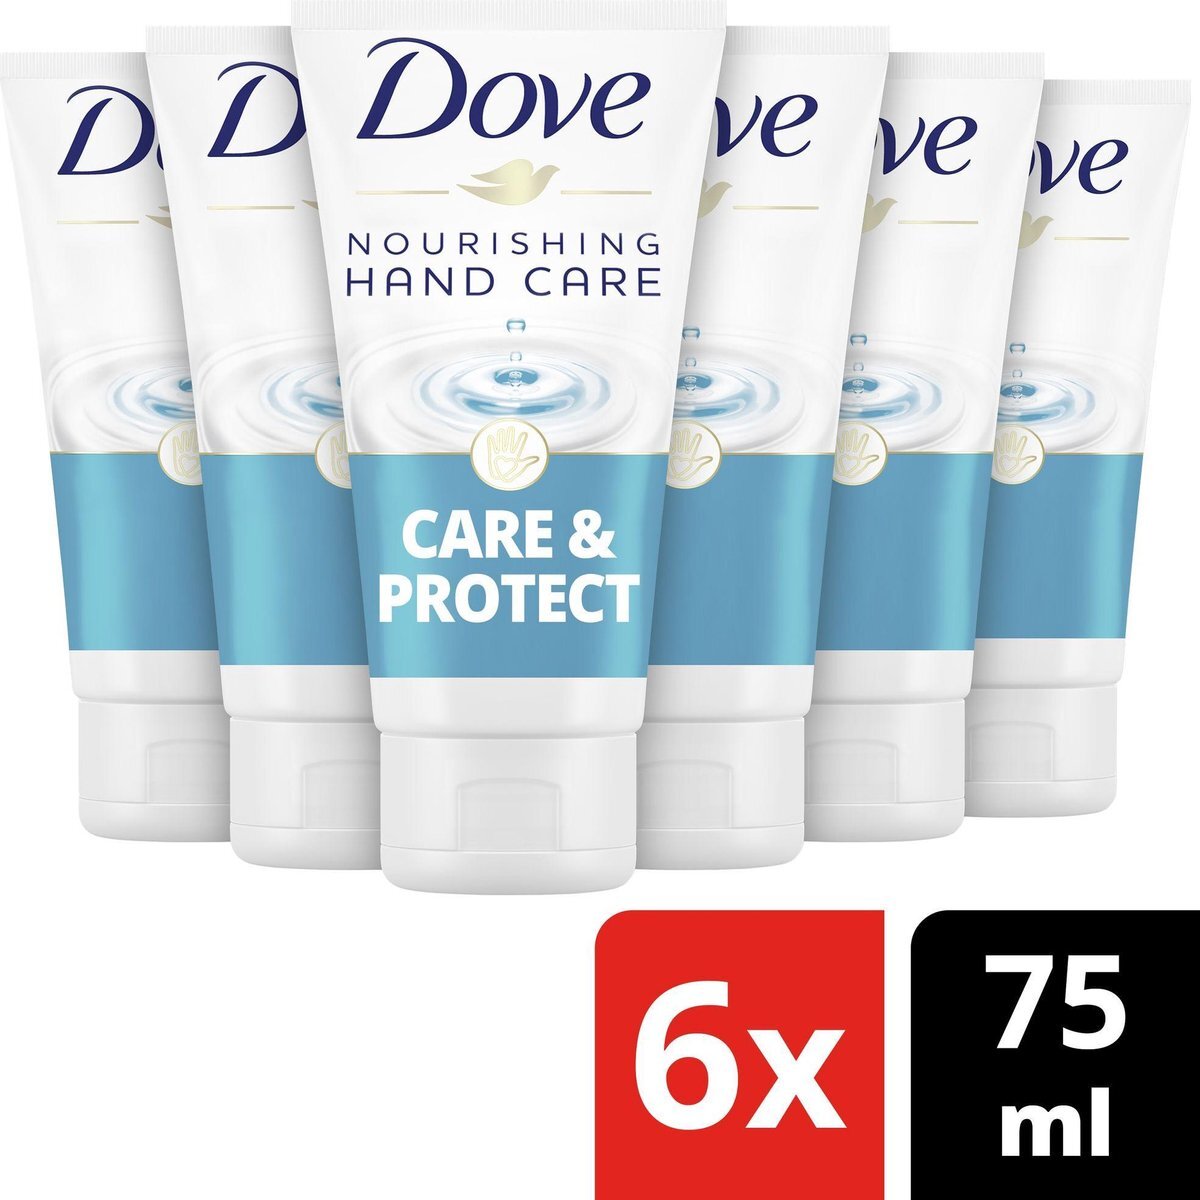 Dove Care & Protect Handcreme - 6 x 75ml - voordeelverpakking